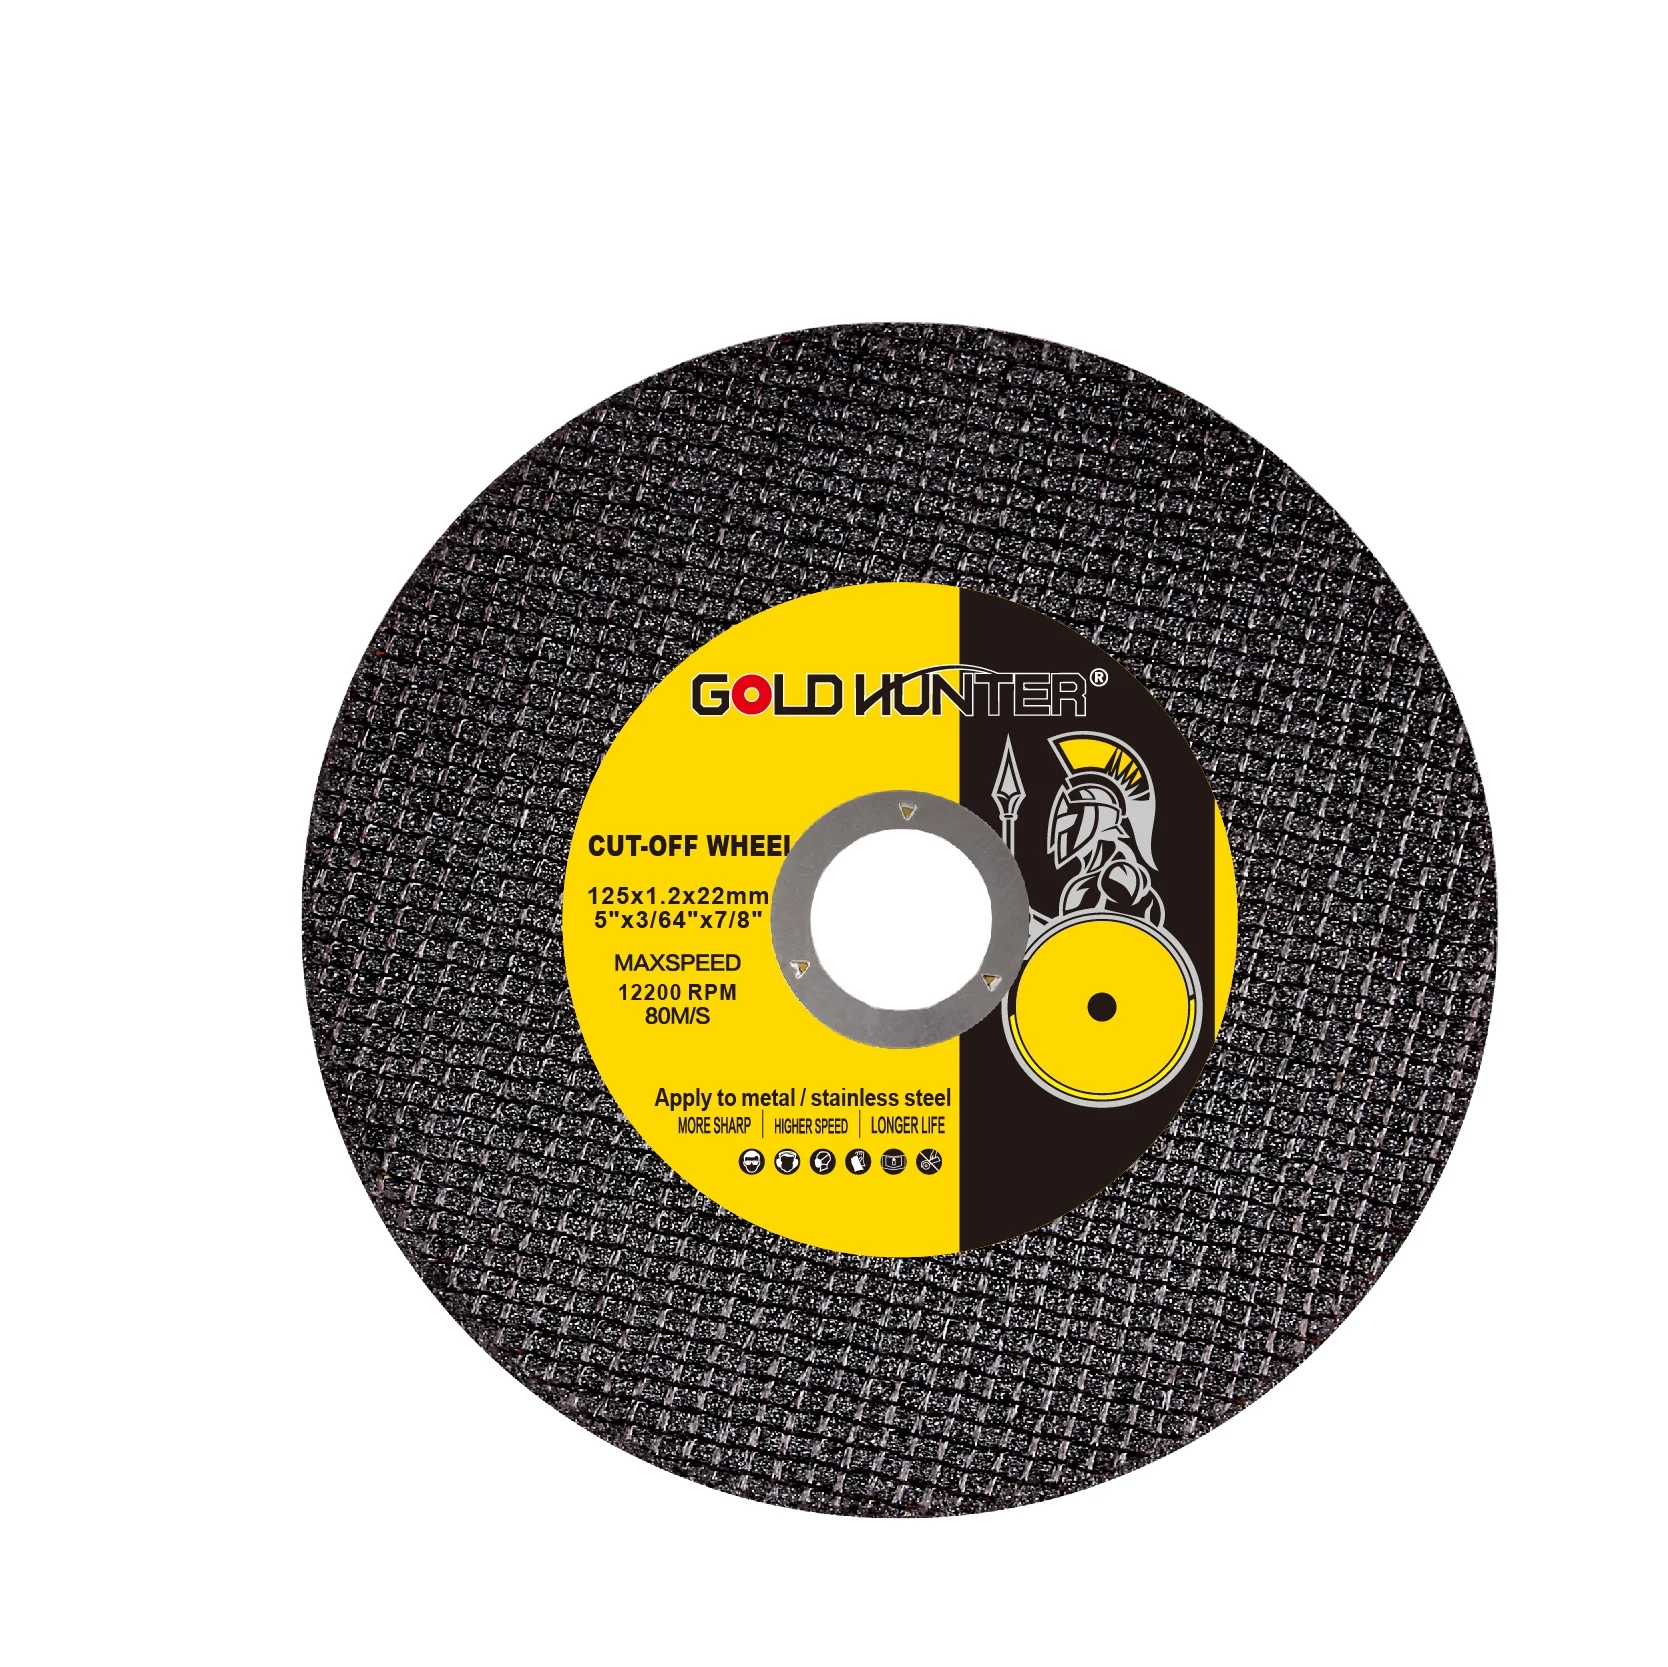 Сверхтонкий режущий диск A46 TBF 41 GOLD HUNTER, диск для резки/колесо/отрезное колесо для стали и нержавеющей стали, 5 дюймов, 125x1,6x22,2 мм